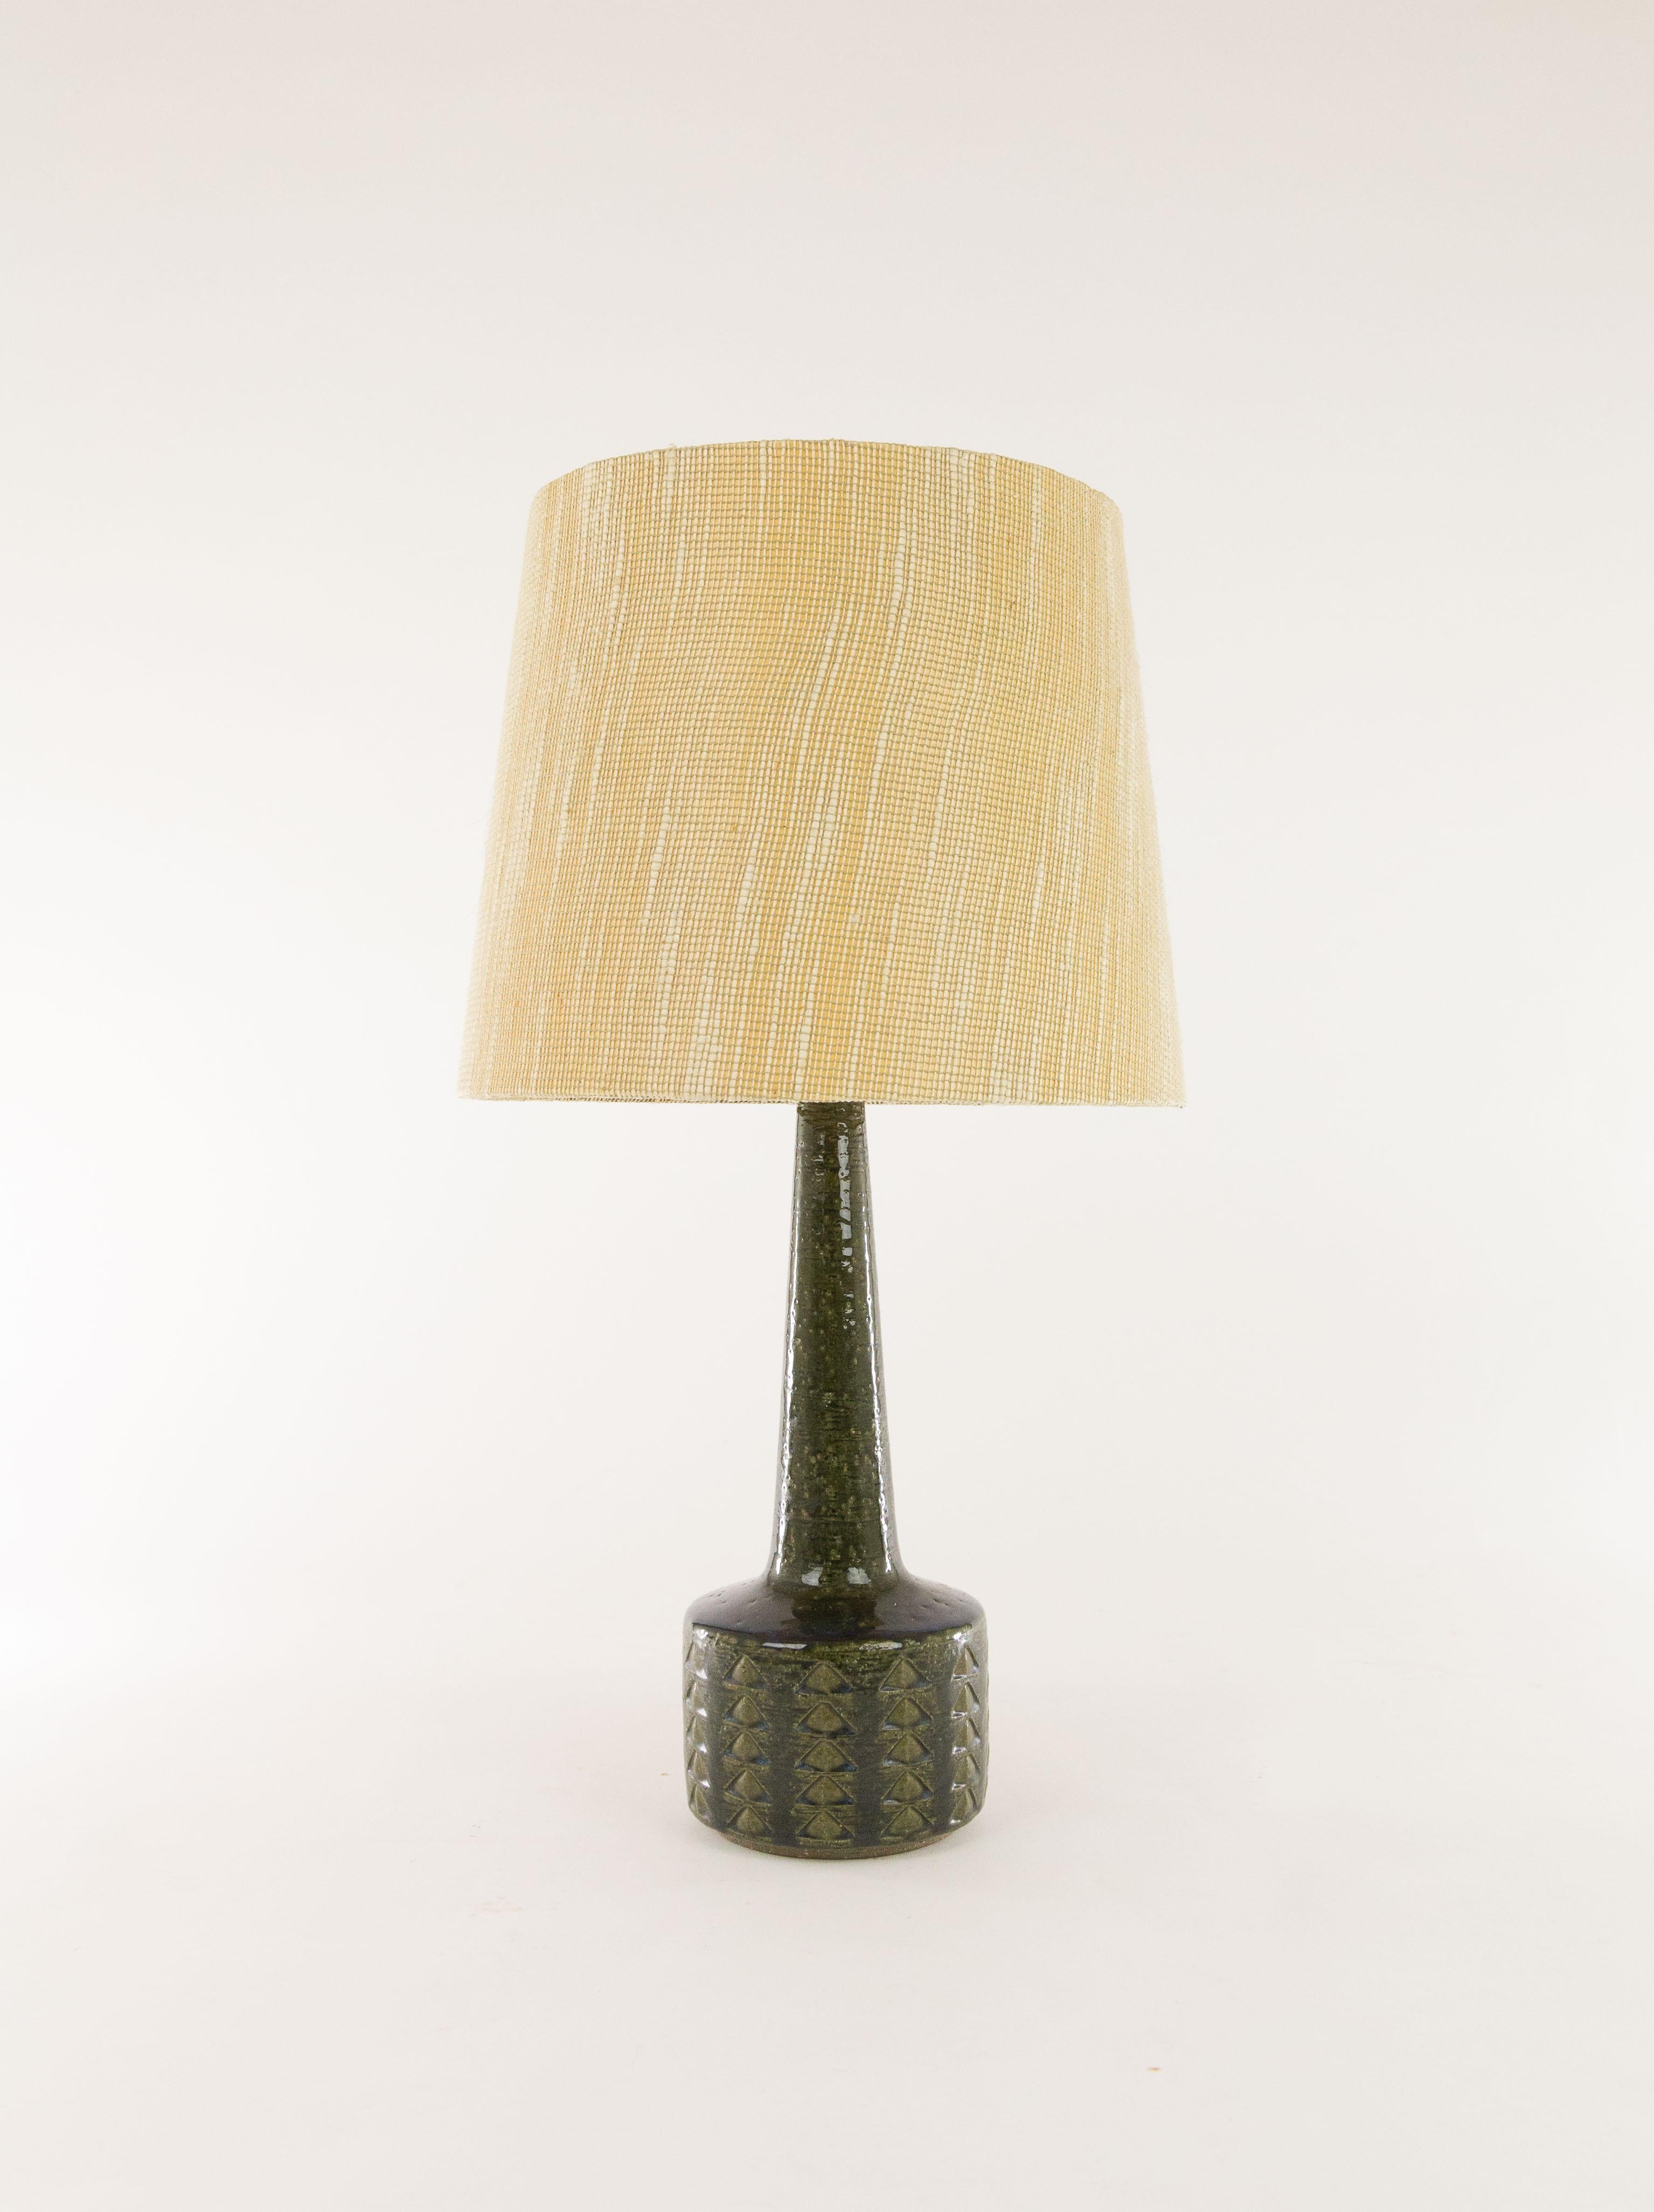 Lampe de table modèle DL/35 réalisée par Annelise et Per Linnemann-Schmidt pour Palshus dans les années 1960. La couleur de la base décorée à la main est vert olive foncé avec des traces de bleu. 

La lampe est livrée avec son support d'abat-jour